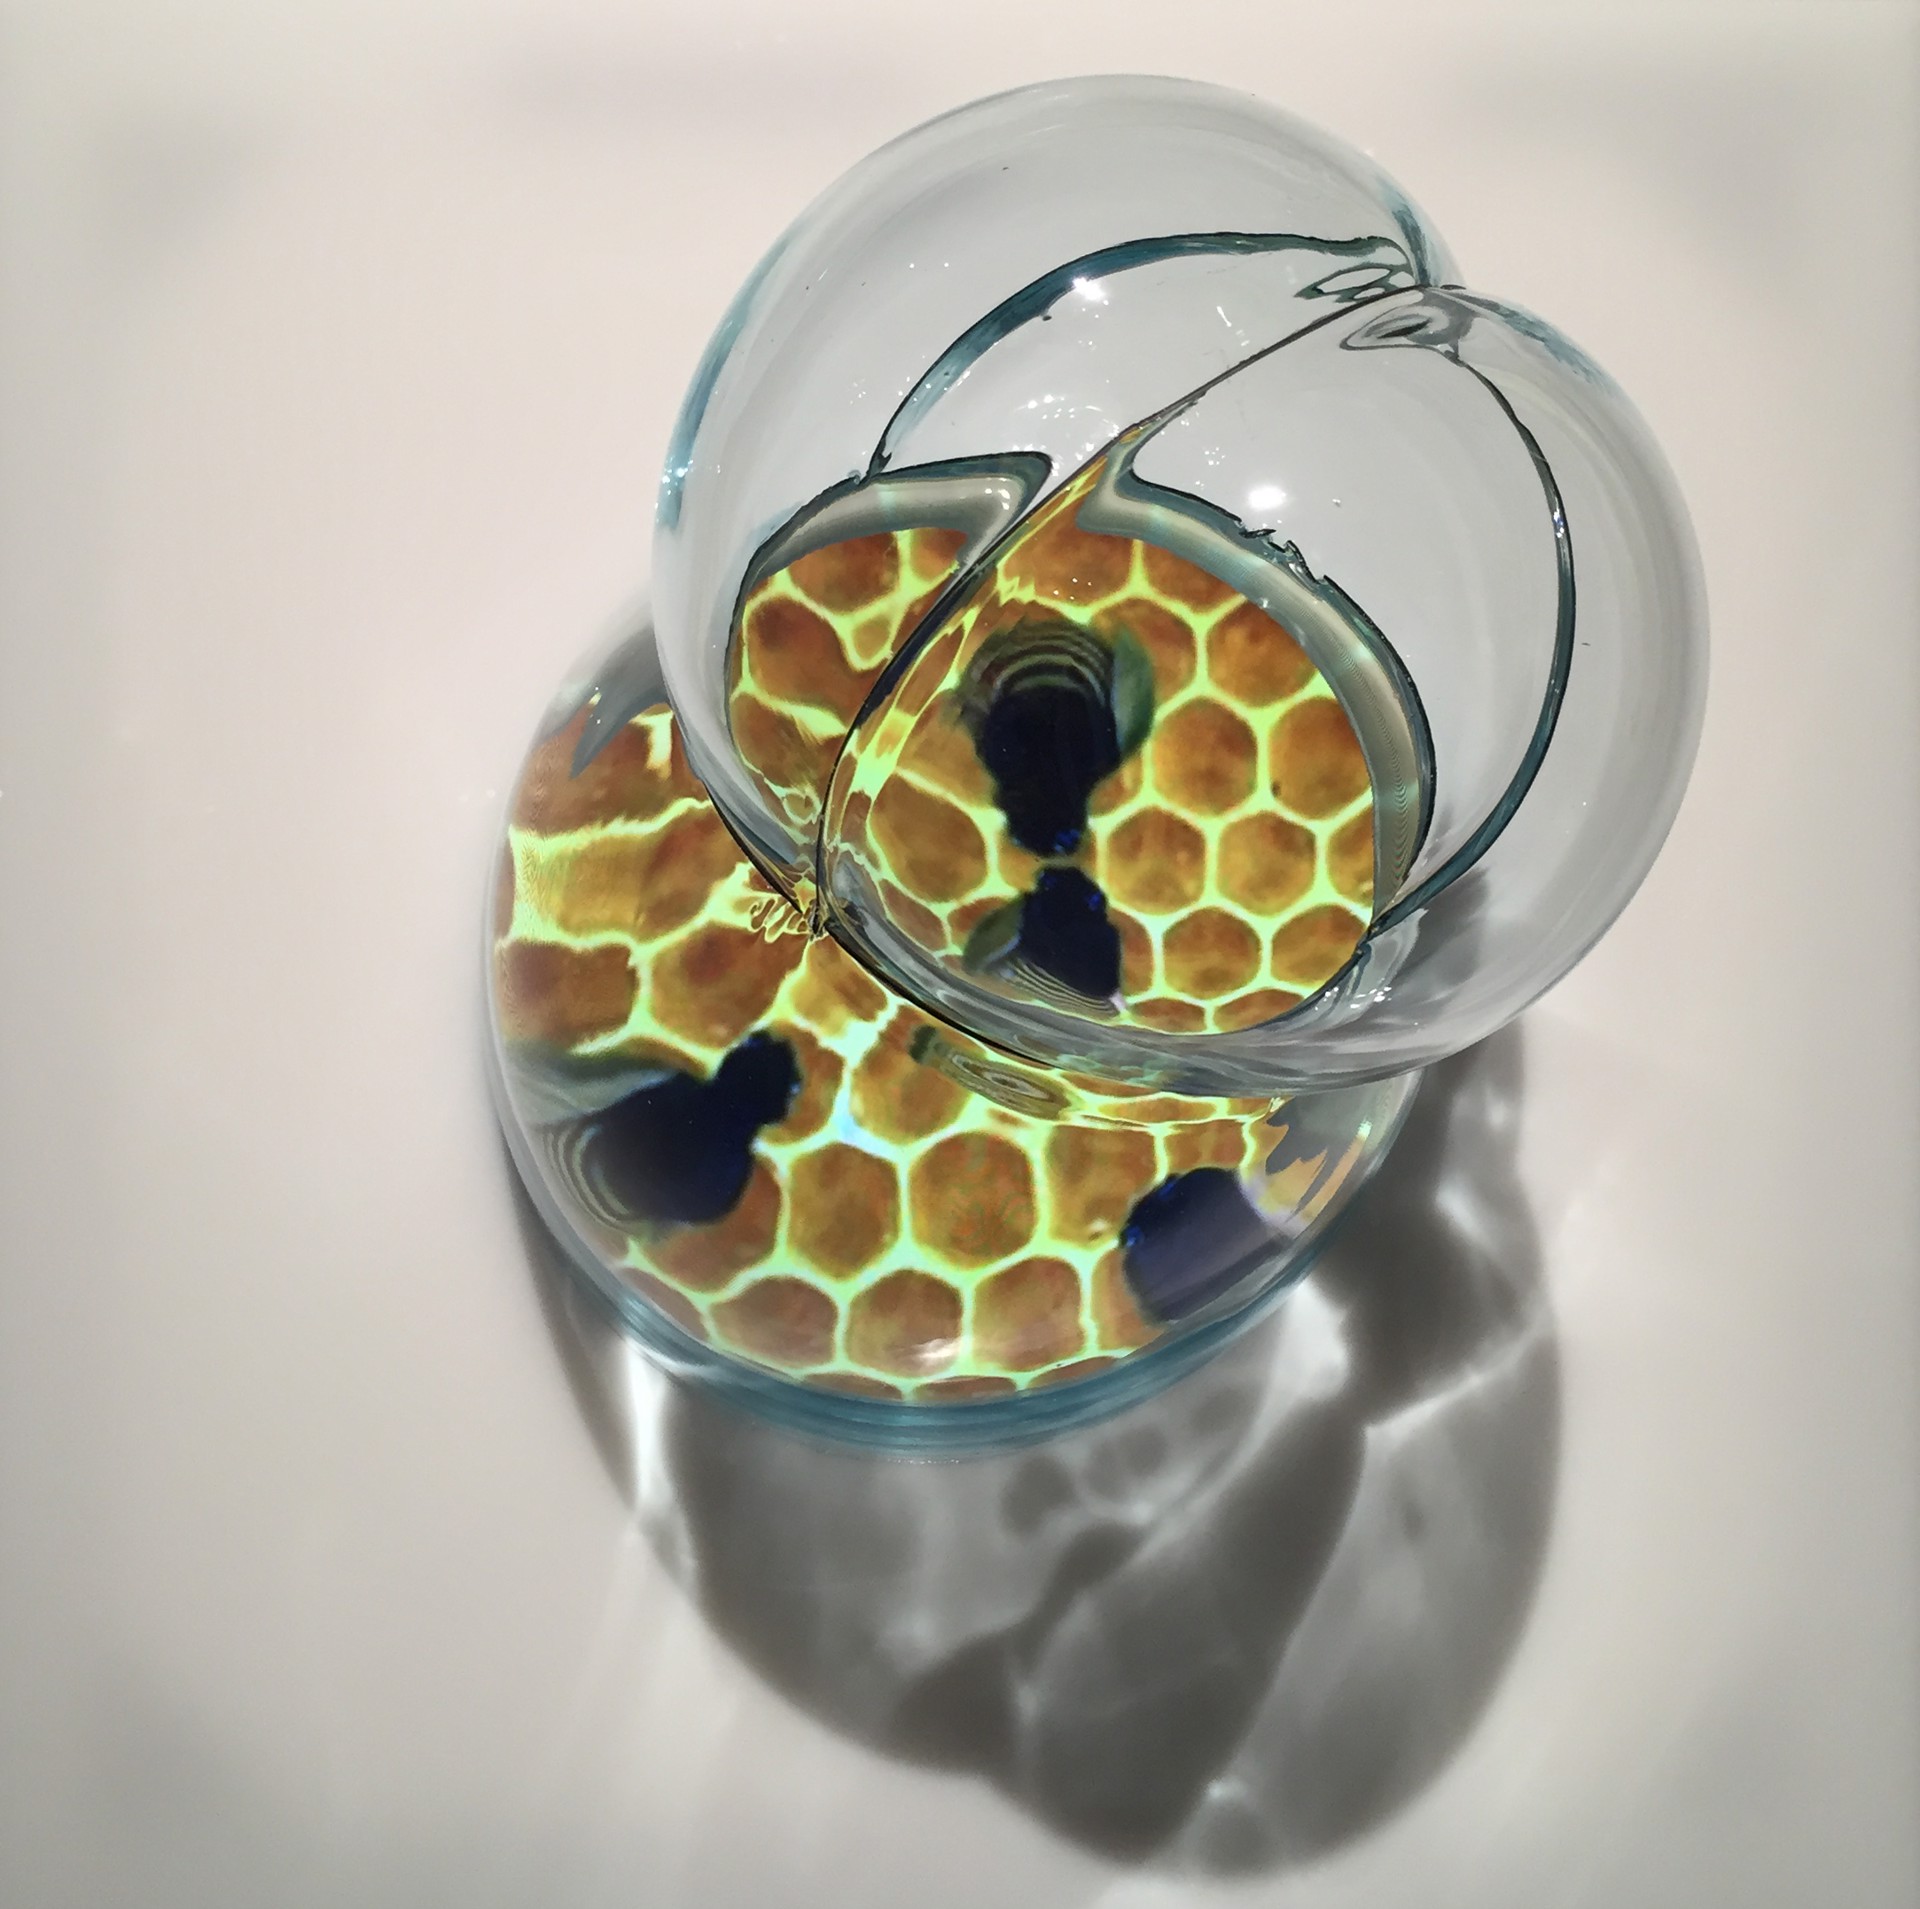 Can Pesticides Make Honey? by Katja Loher